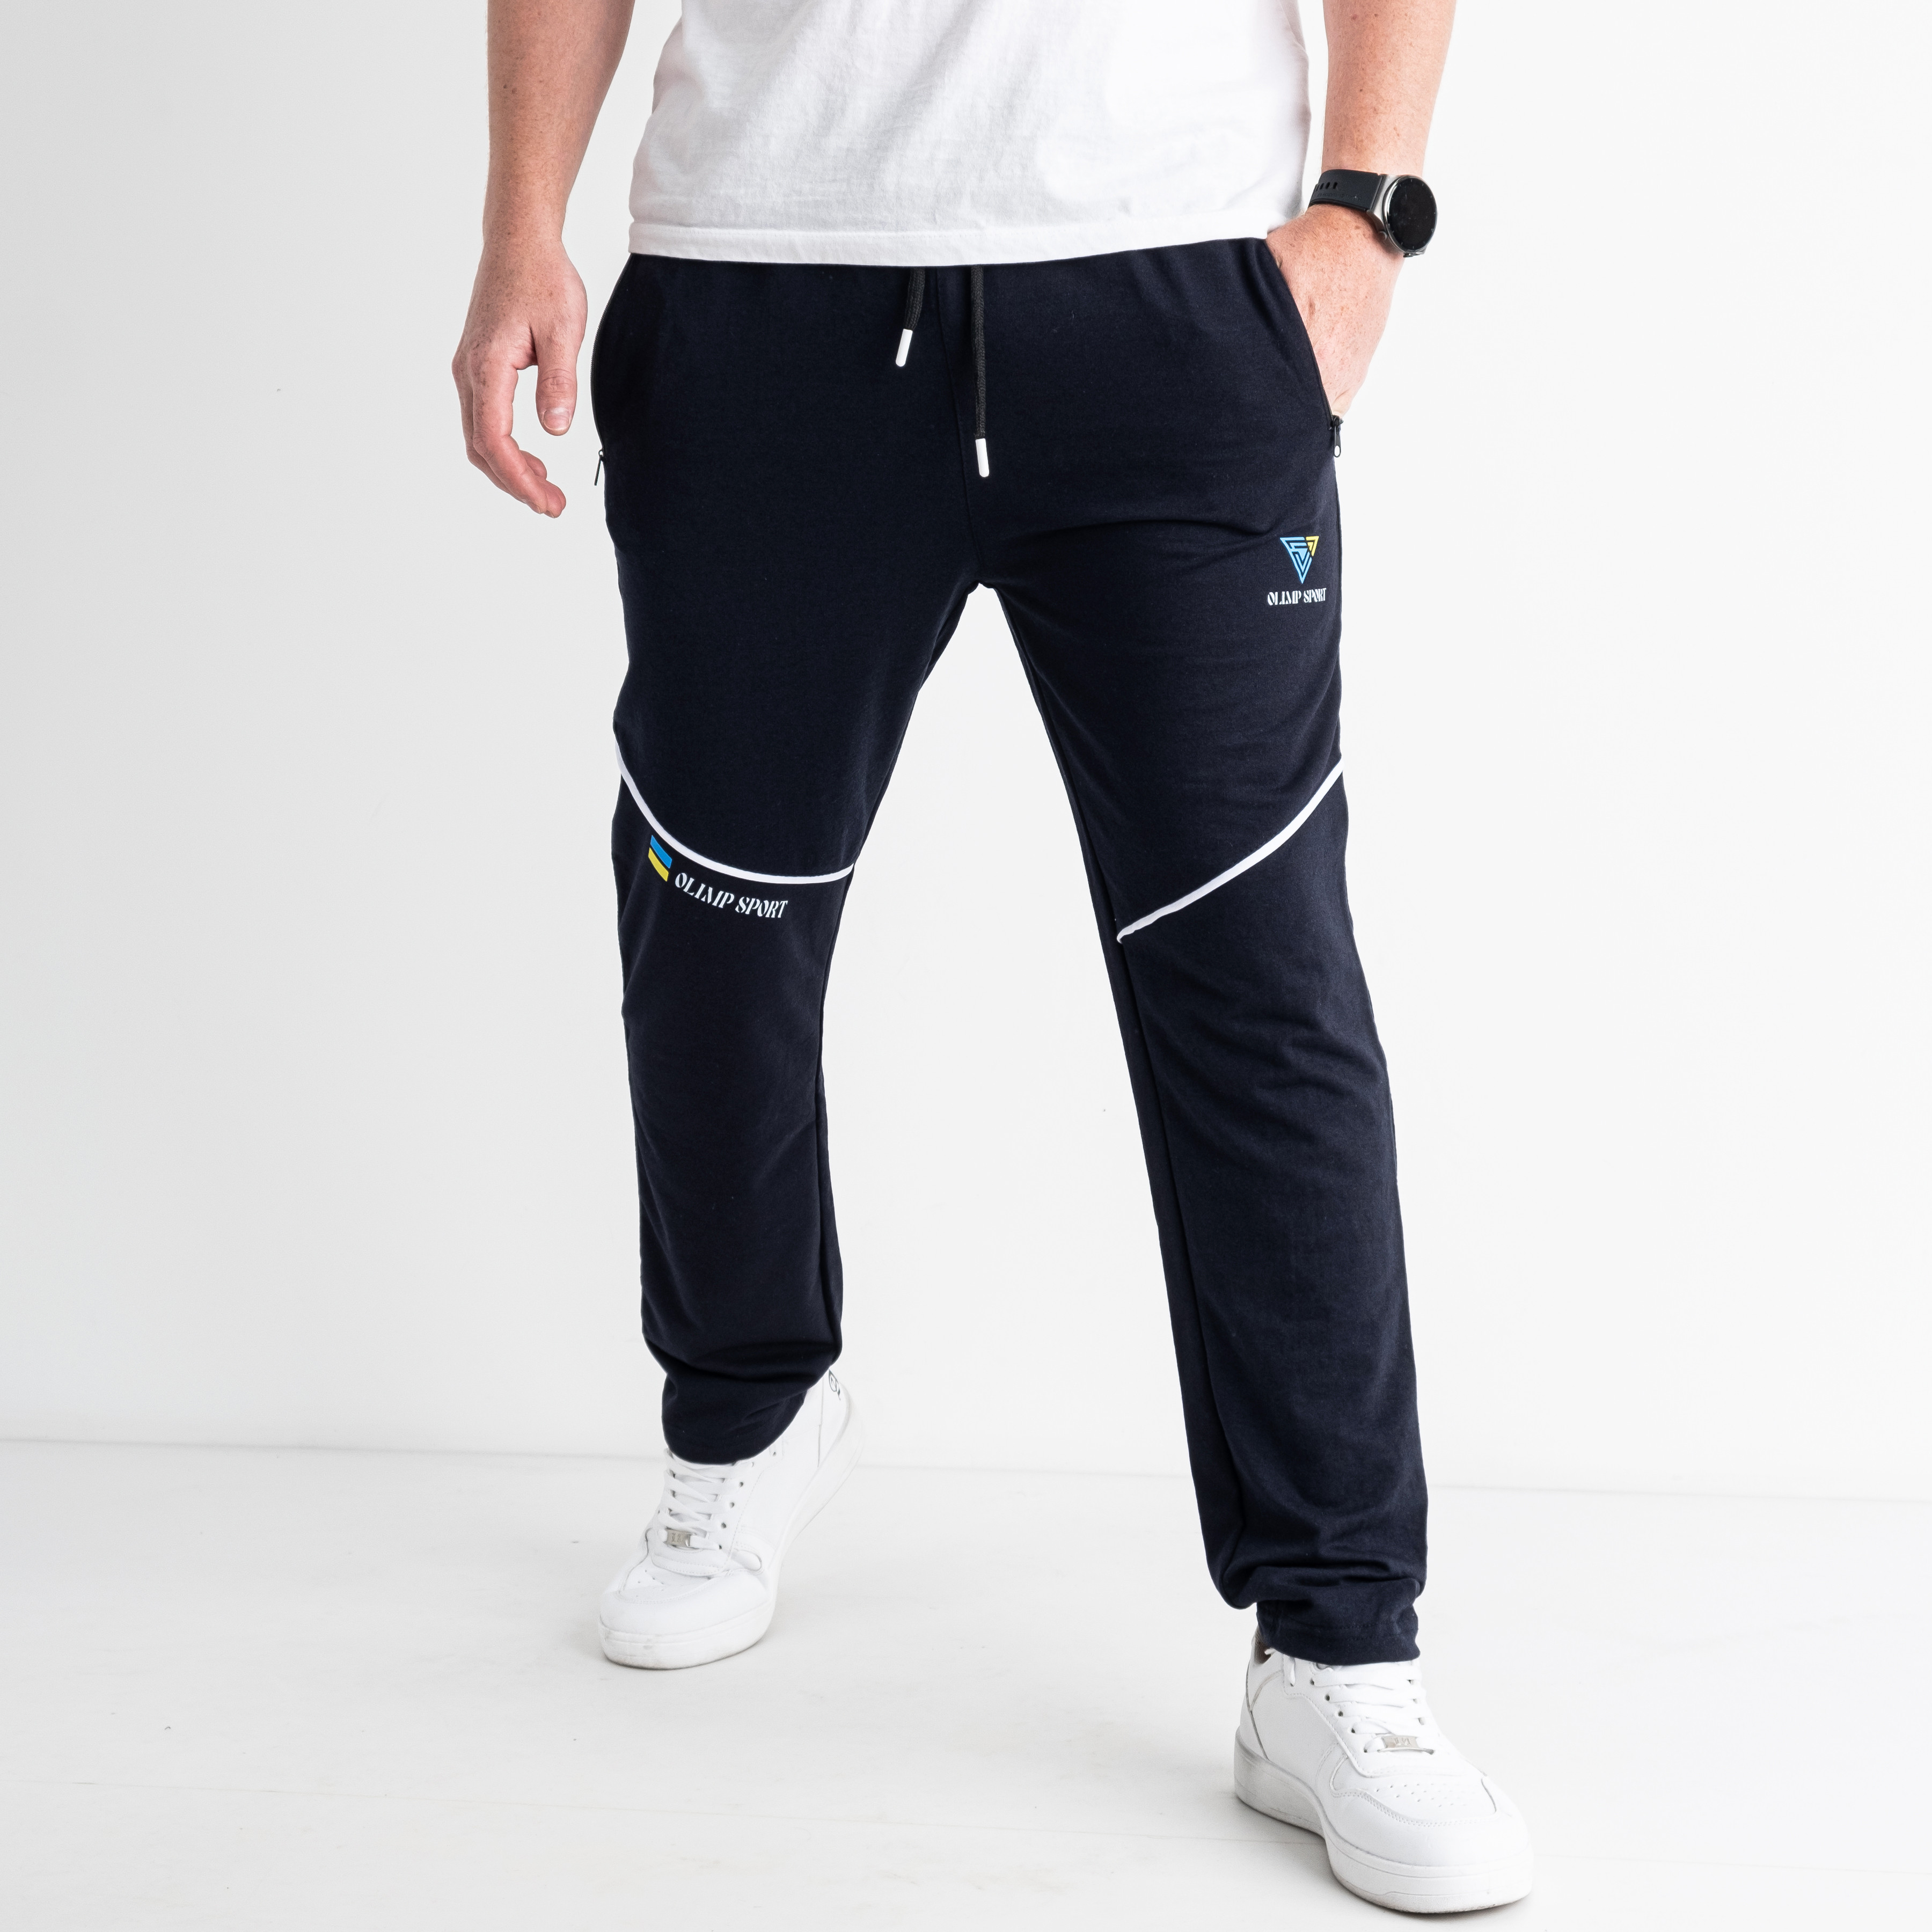 1802-2 ТЁМНО-СИНИЕ спортивные штаны мужские стрейчевые (5 ед. размеры: S.M.L.XL.2XL)